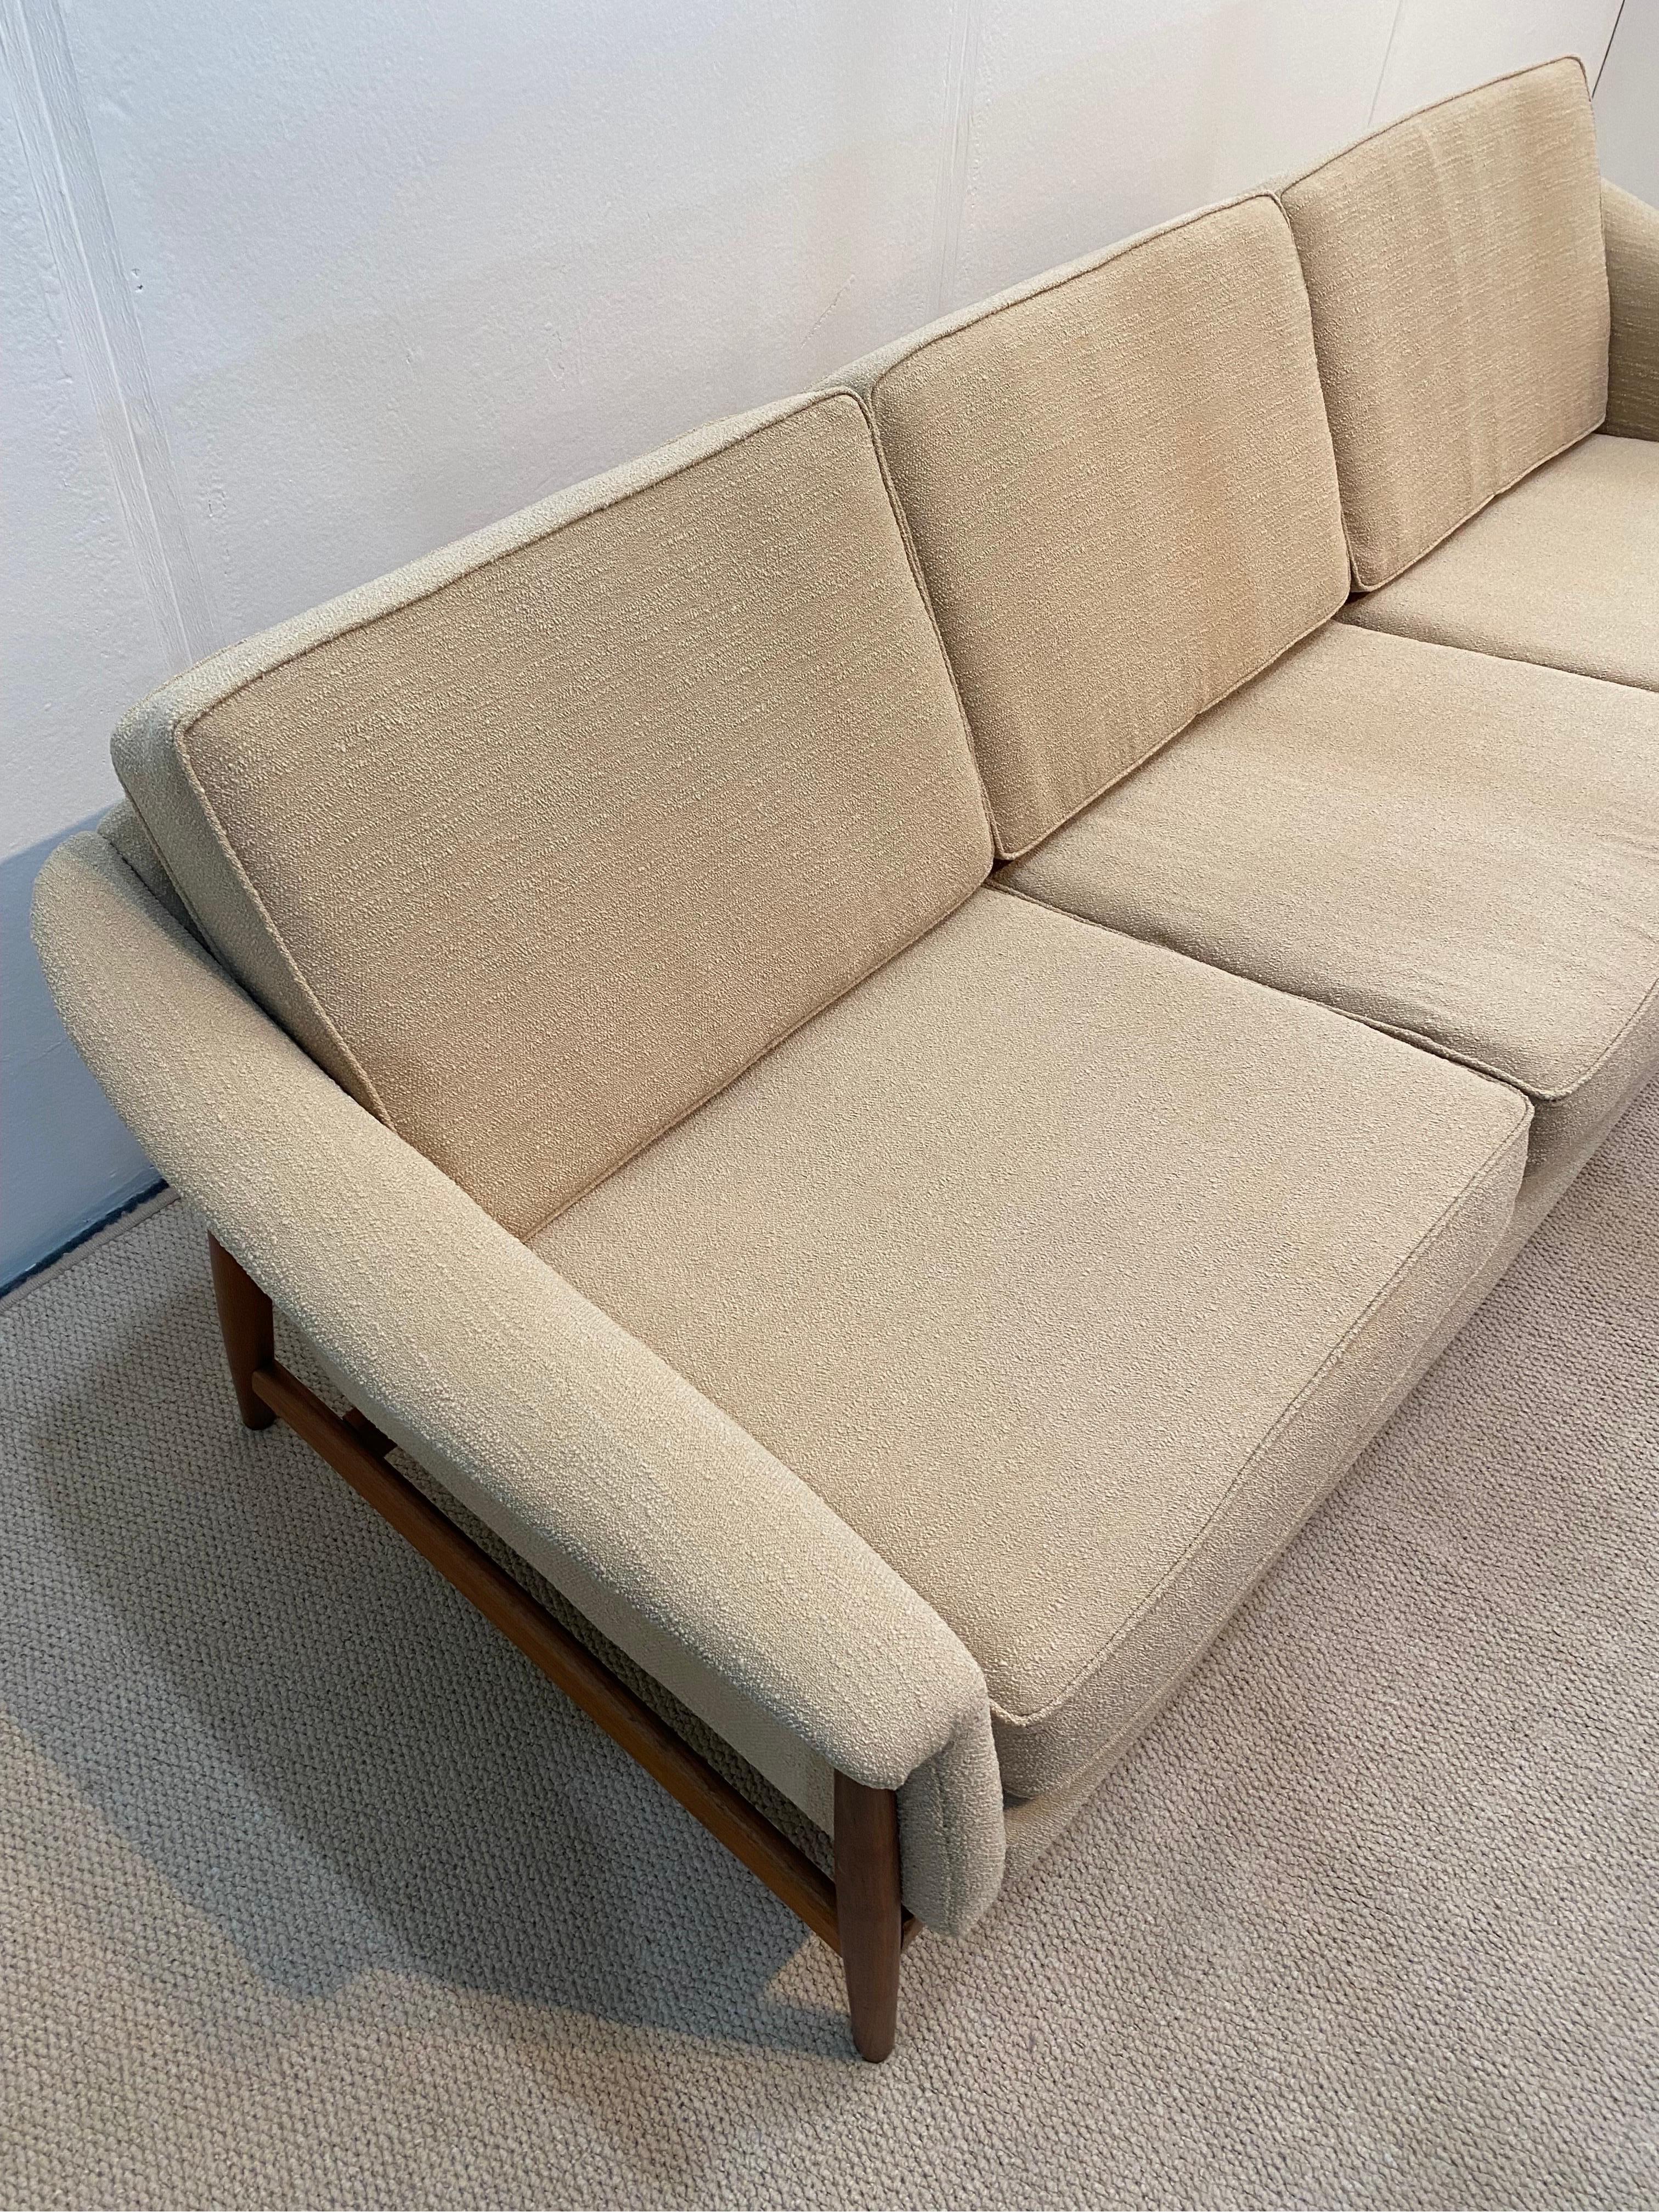 Folke Ohlsson for Dux Sweden Mid Century Modern Sofa 1960s Boucle  4